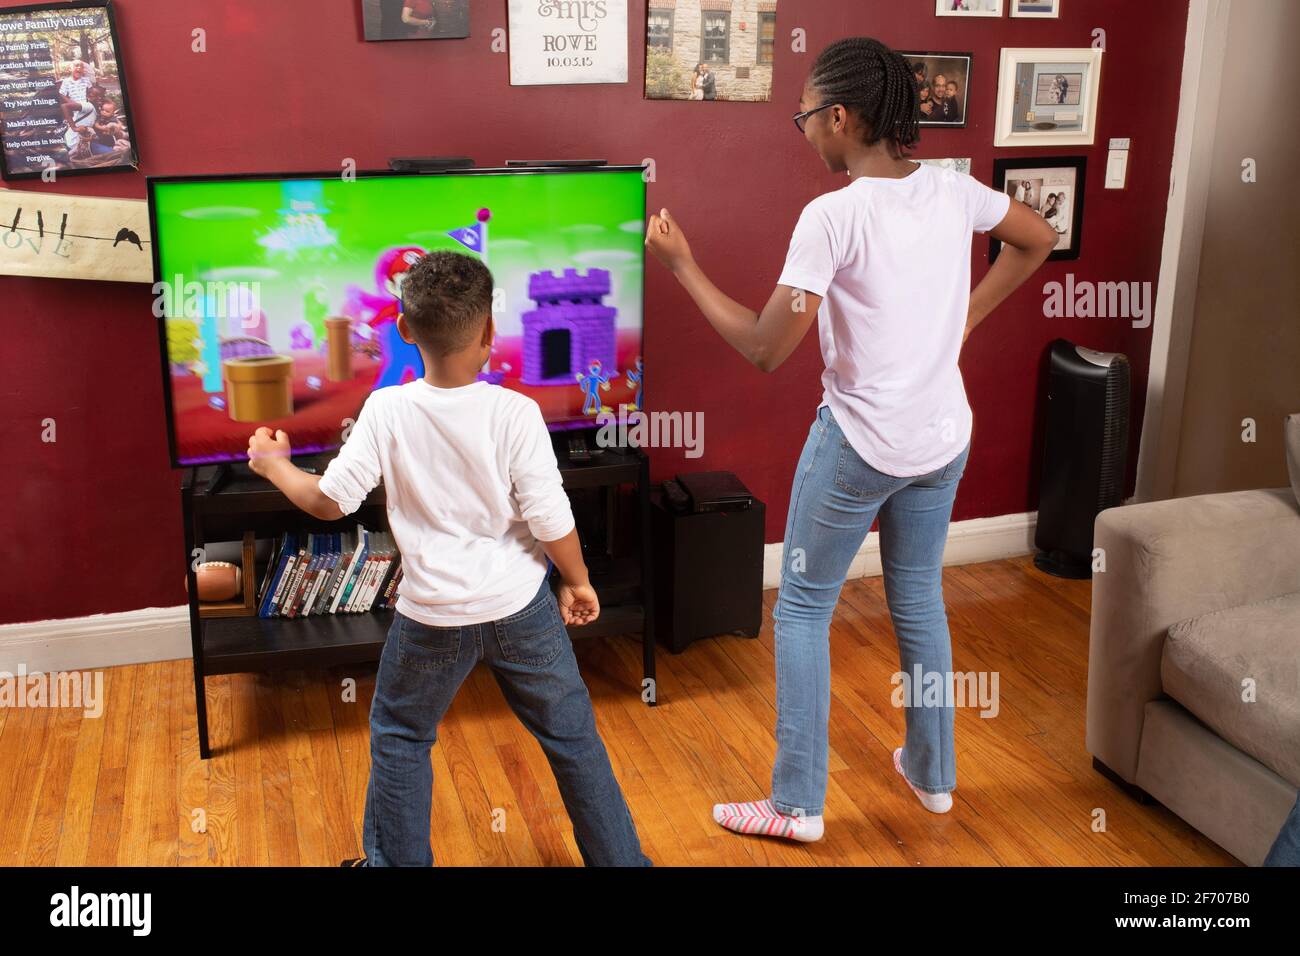 Deux enfants âgés de 7 et 12 ans devant la télévision écran faisant de l'exercice danse vidéo suivant les mouvements des caractères à l'écran moitié de frères et sœurs en intérieur Banque D'Images